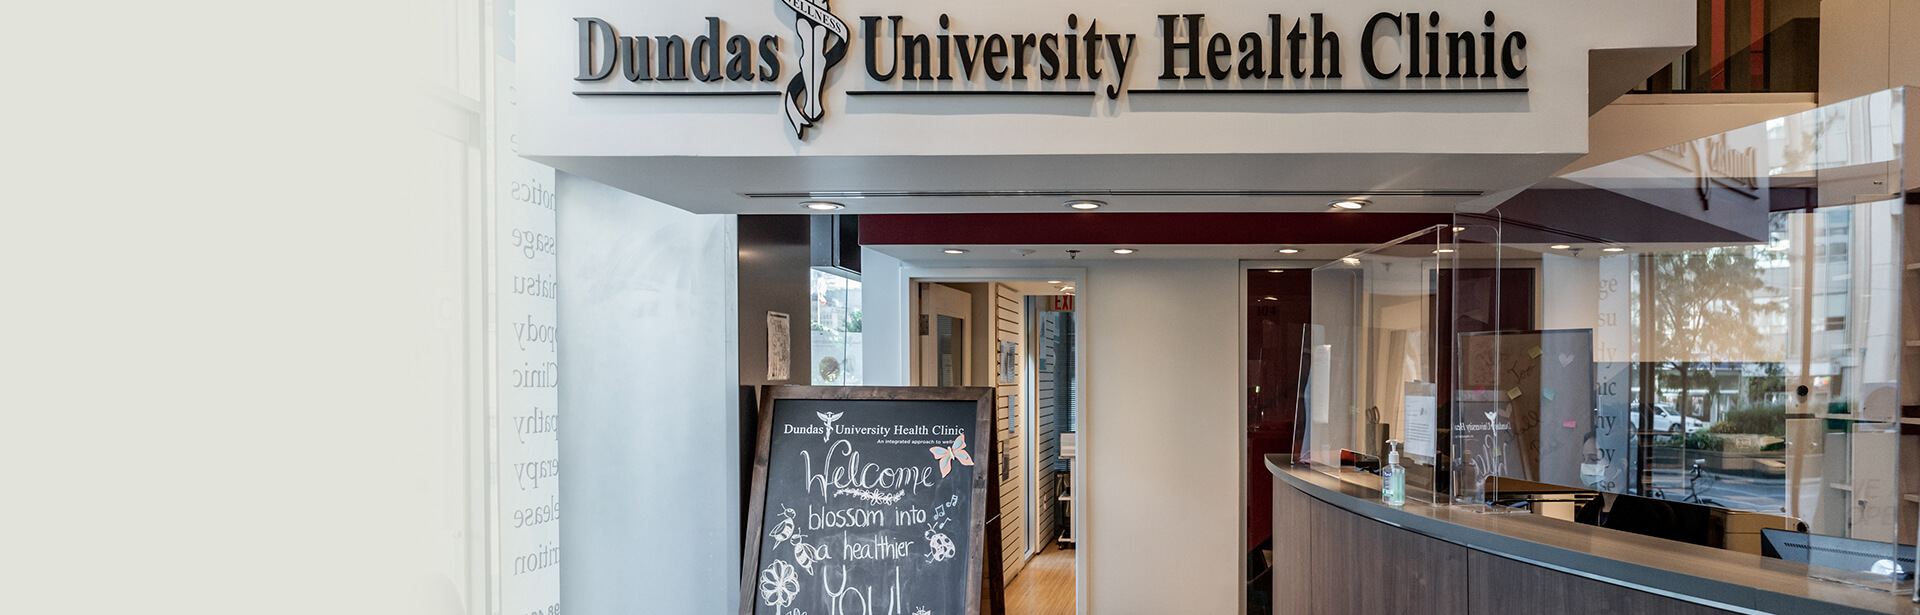 Reception Counter | Dundas University Health Clinic